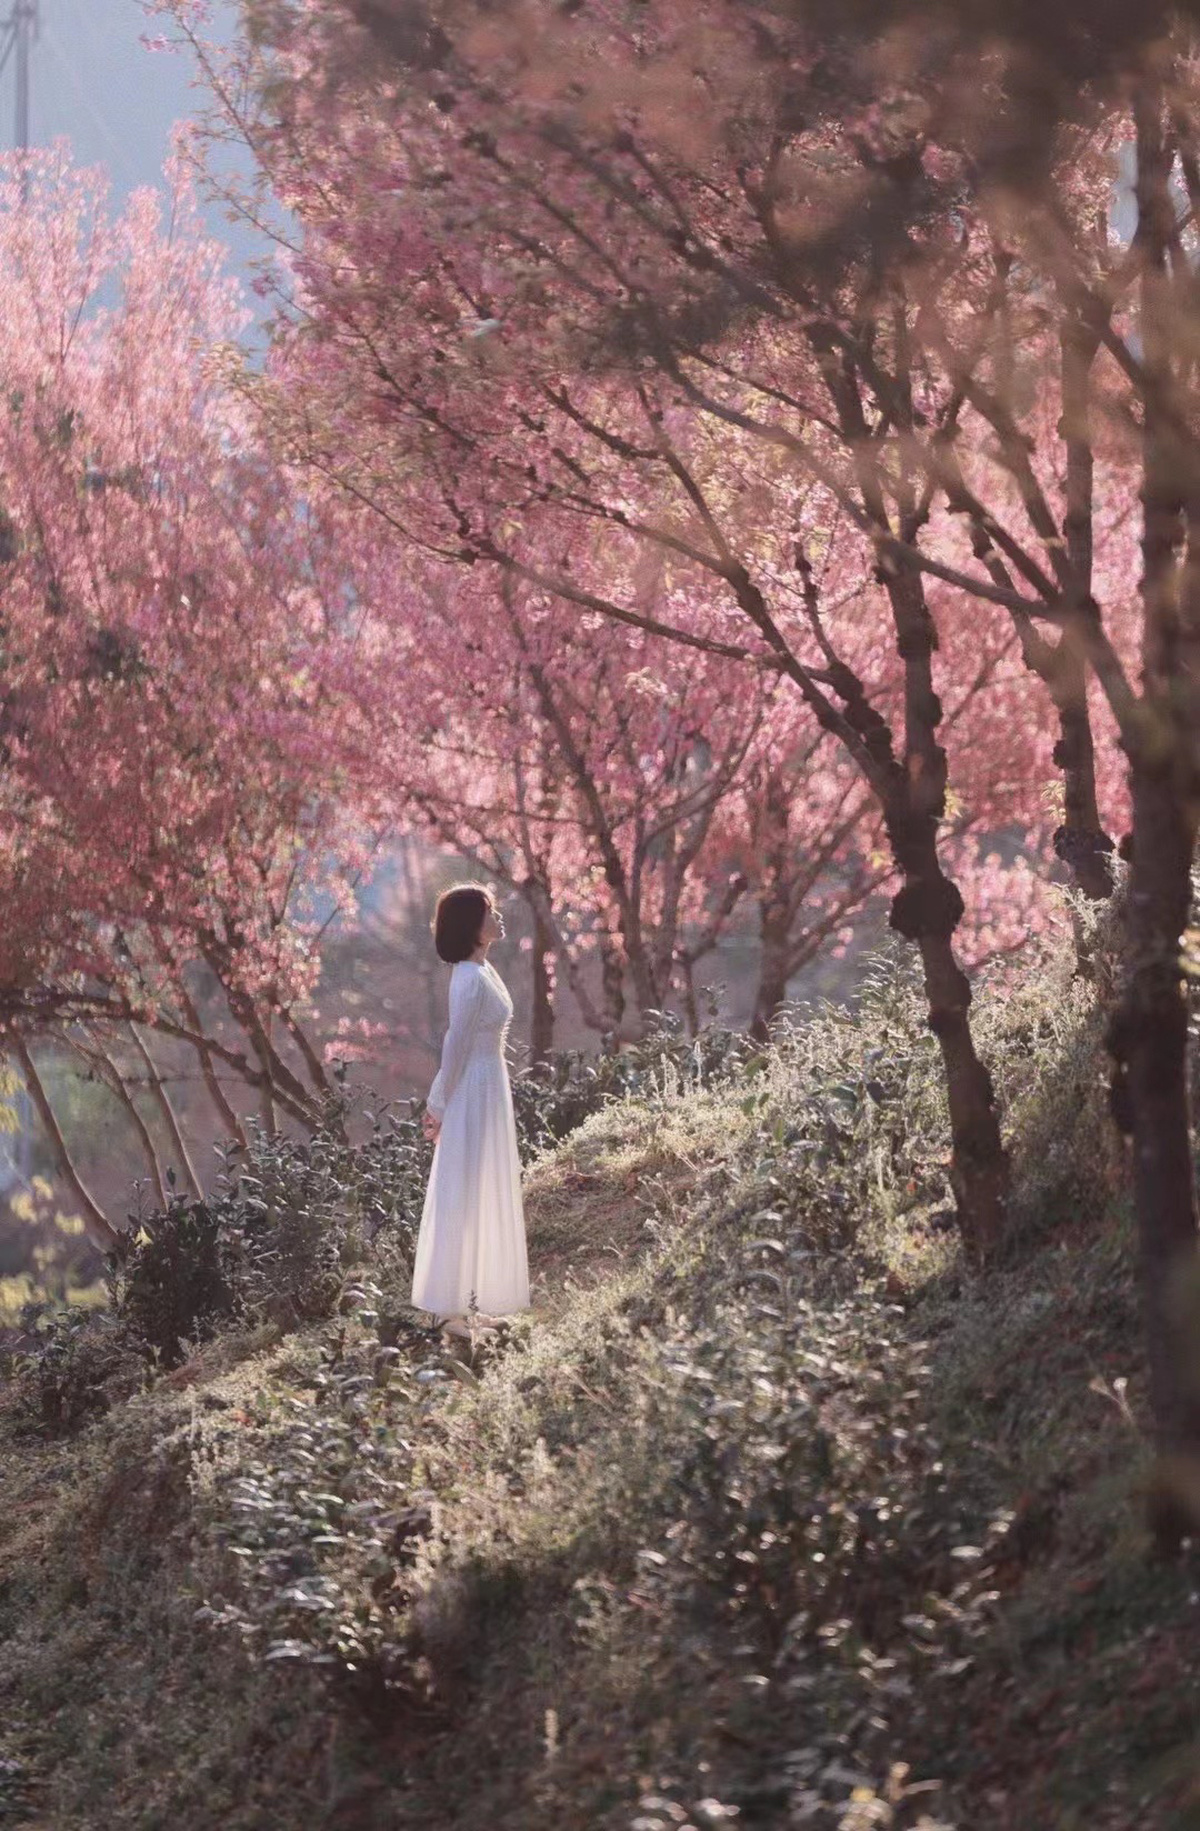 一位穿着白色连衣裙 带着伞的年轻女子走在通往森林的小径上 穿过一片粉红色树木。